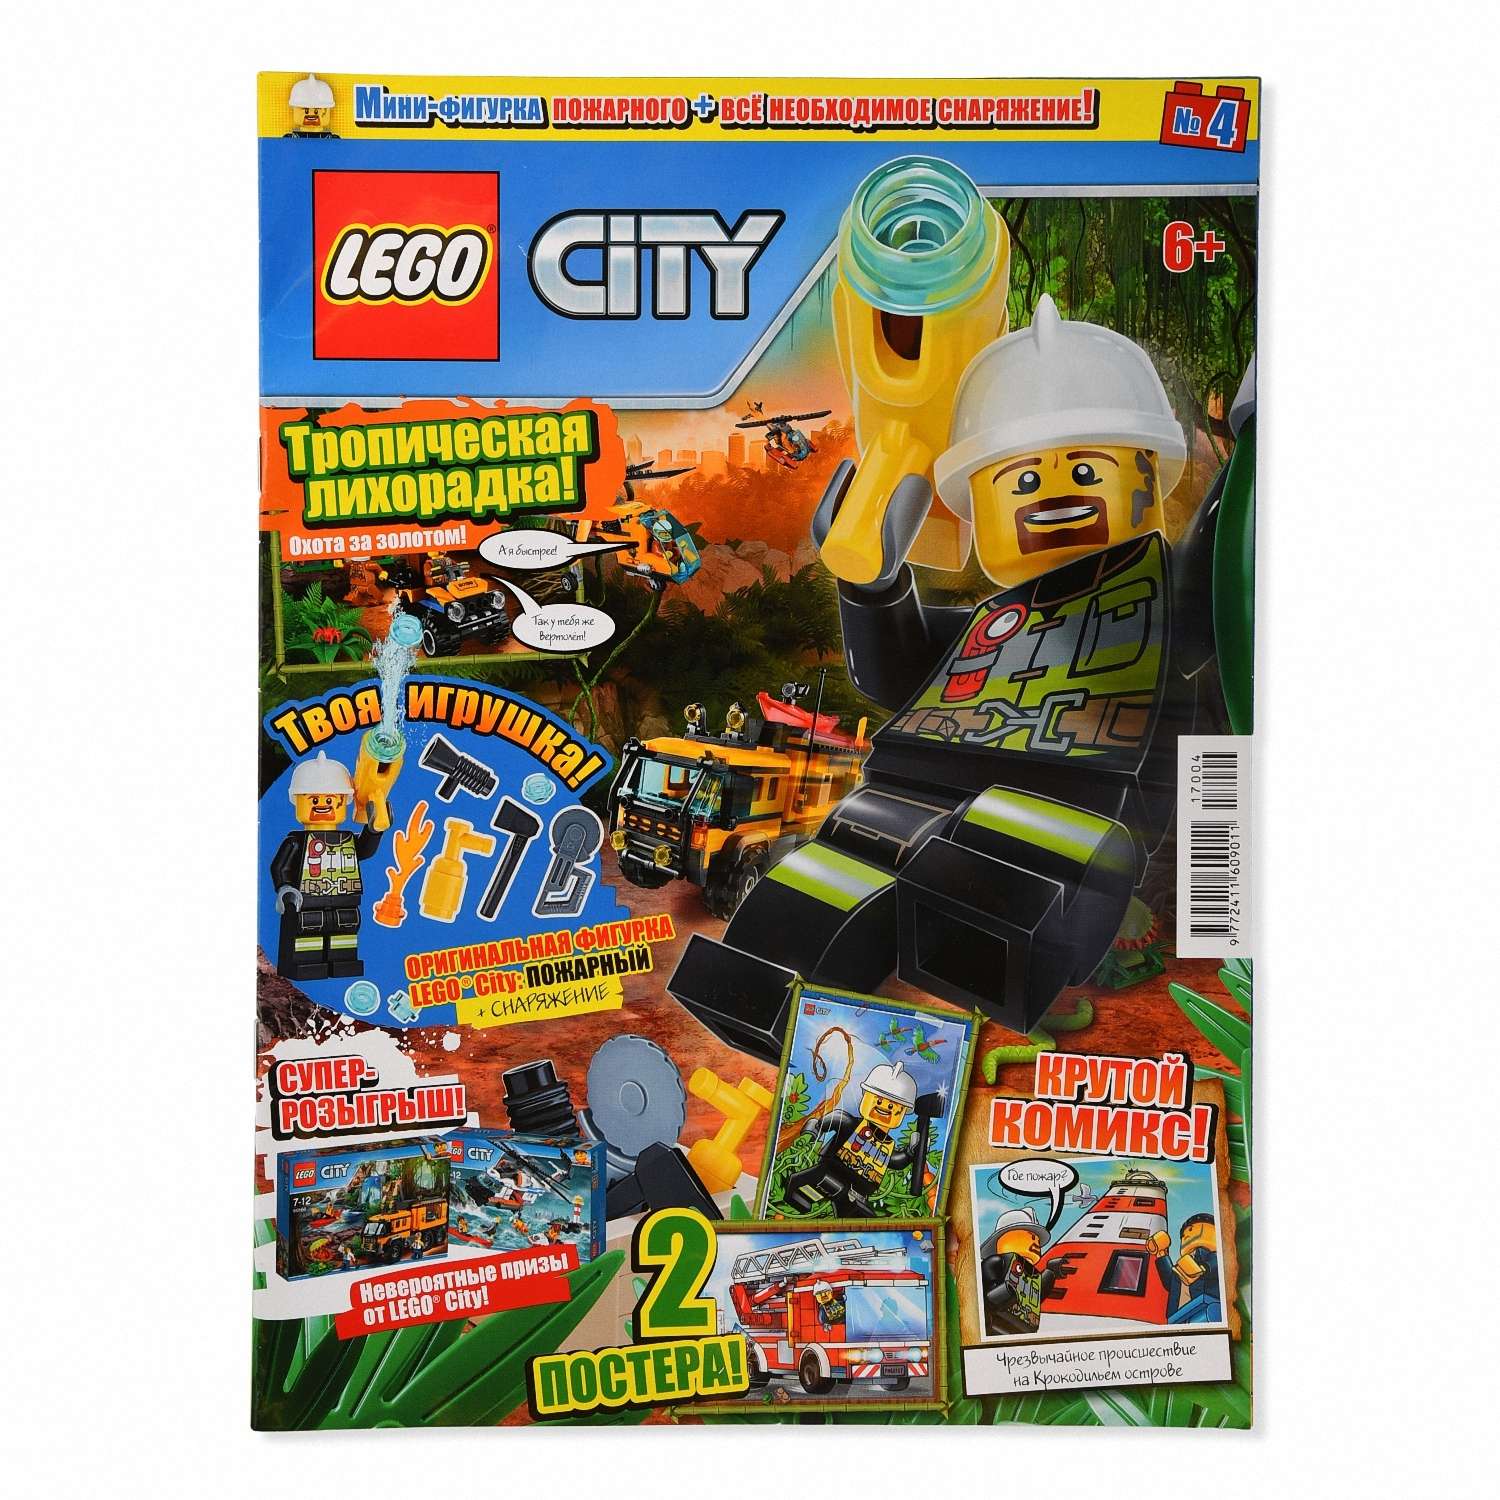 Комикс ORIGAMI Журнал Lego City в ассортименте - фото 7